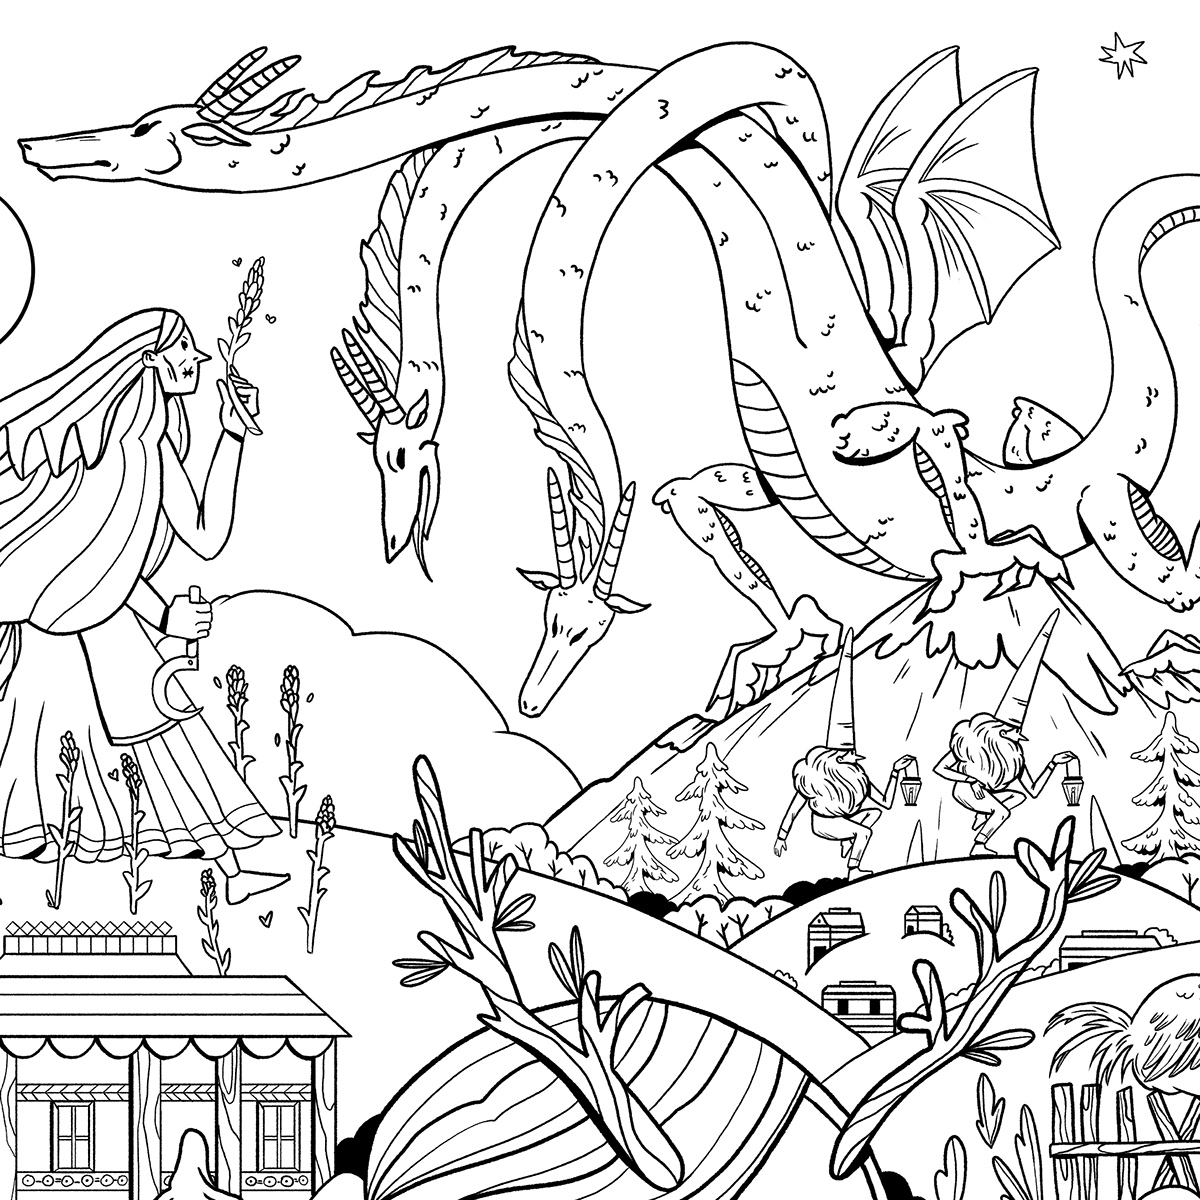 coloring book Digital Art  digital illustration ILLUSTRATION  lineart mythology